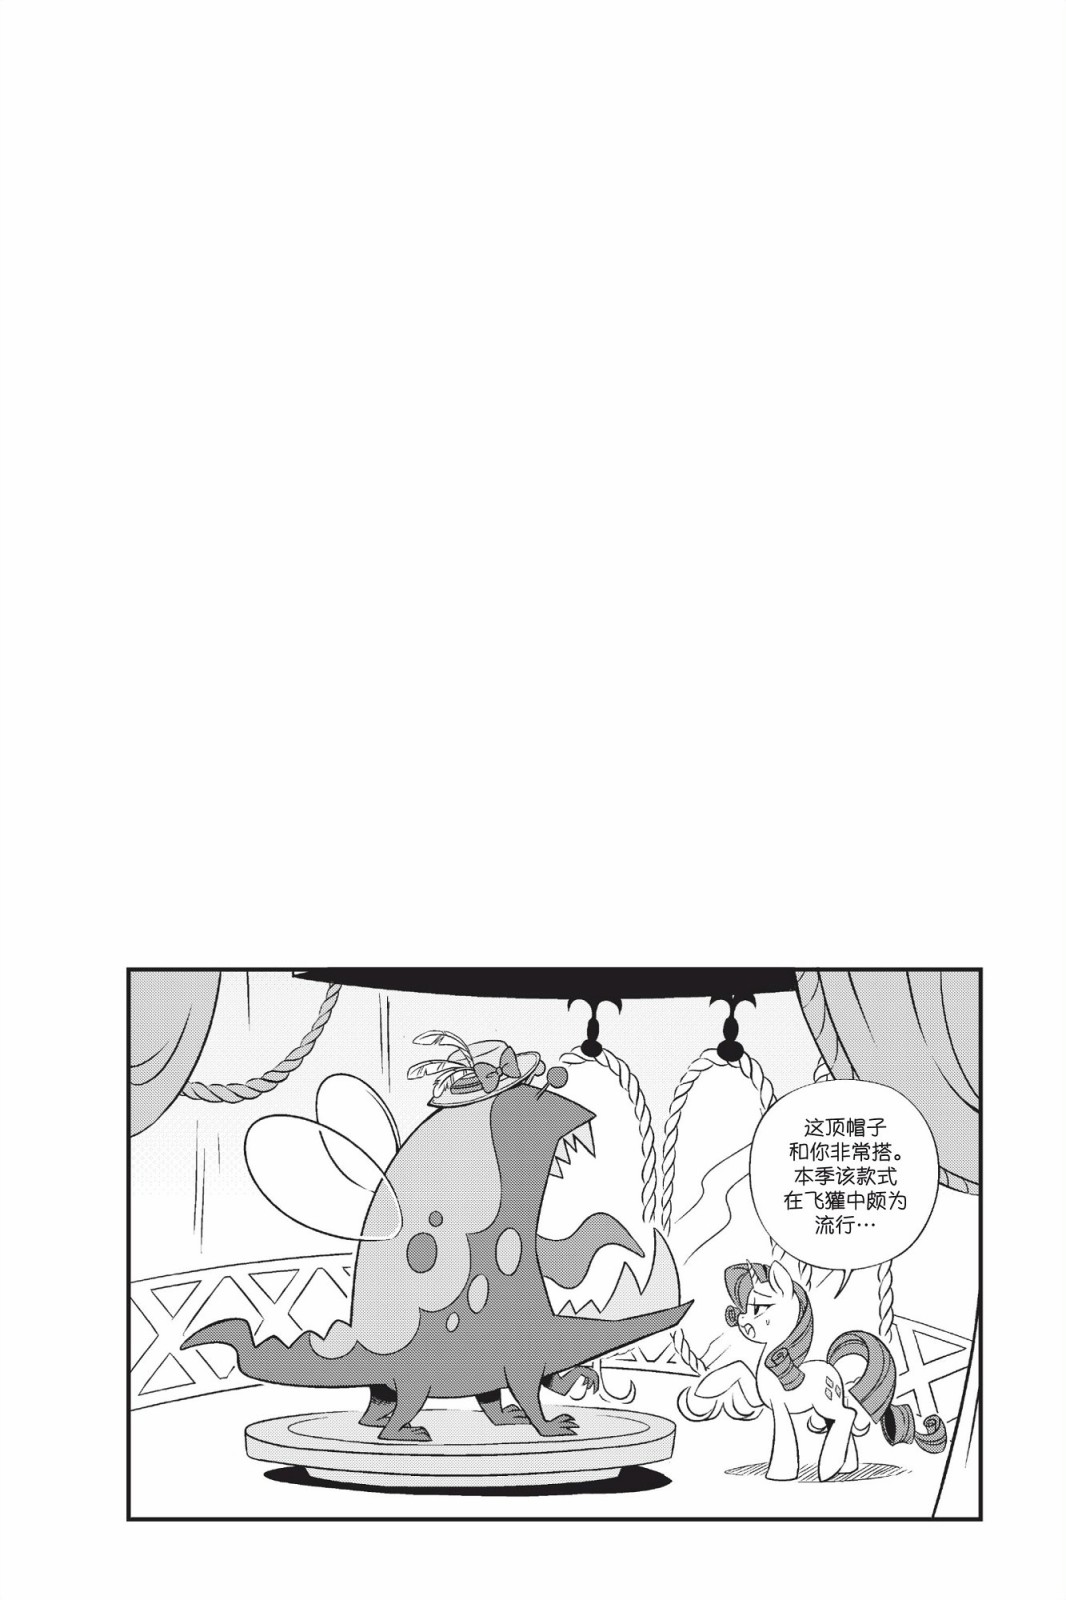 彩虹小馬G4：友情就是魔法 - 新日版漫畫第01部第03話 - 2